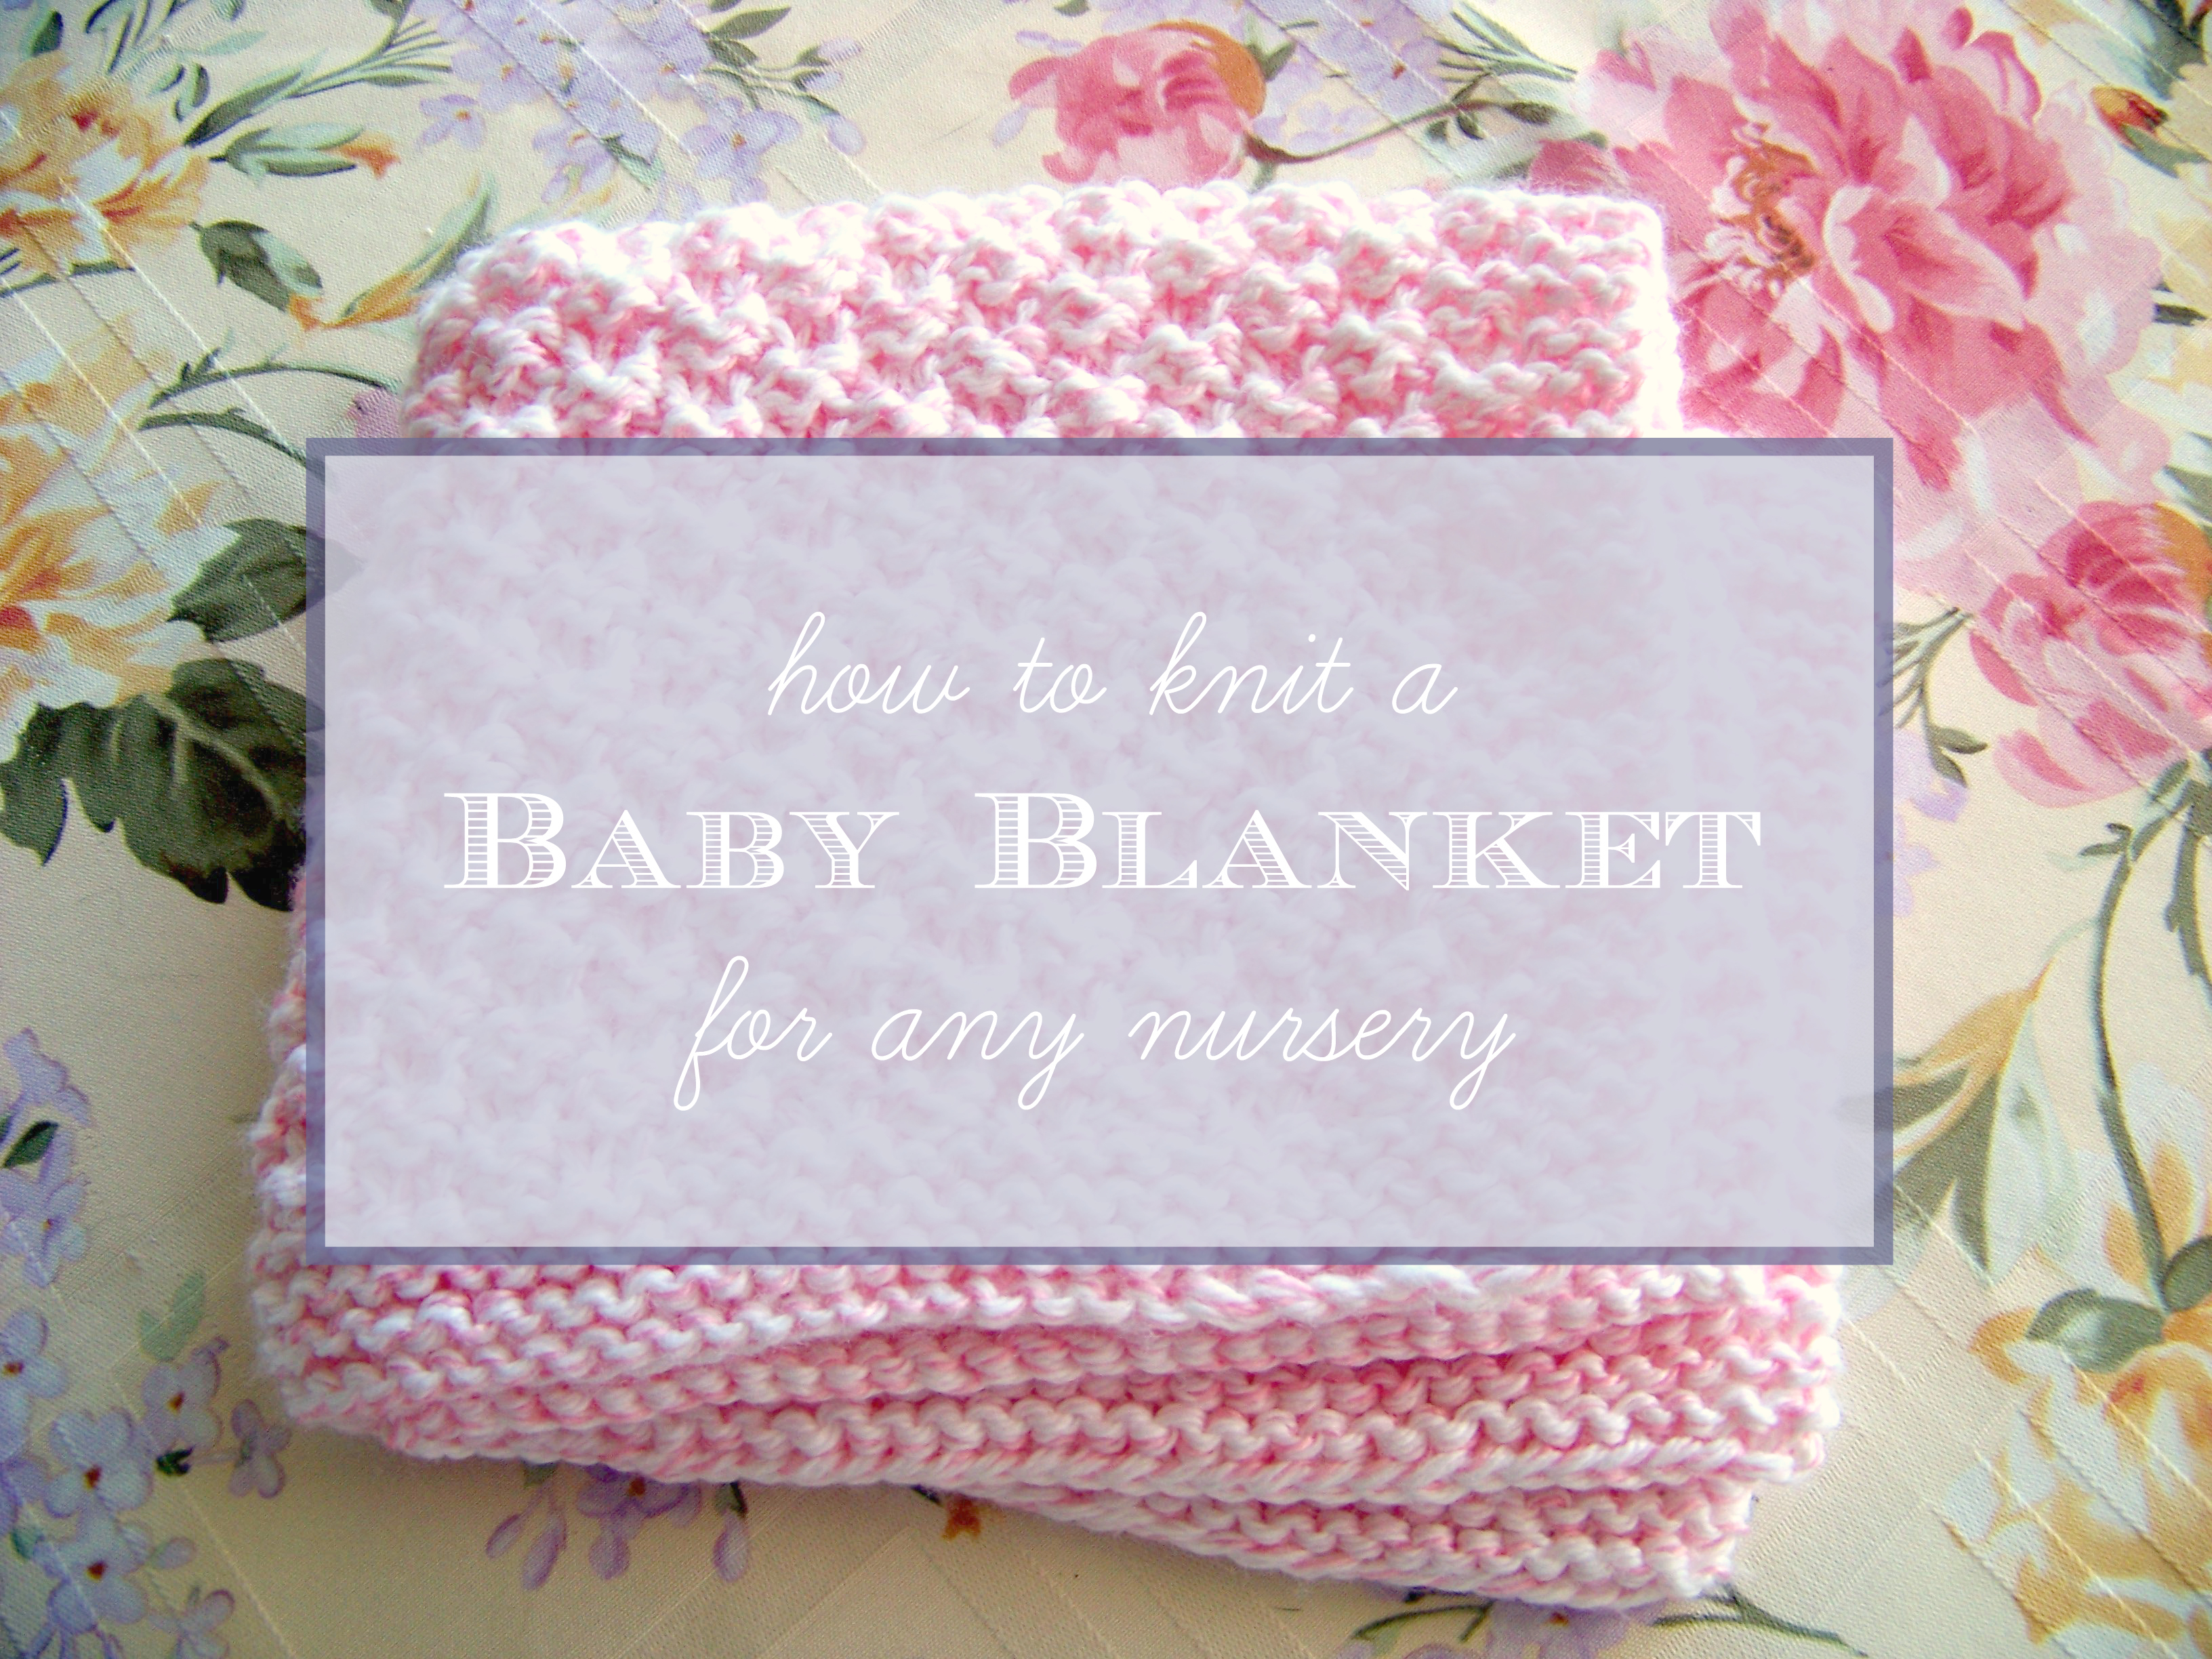 Free Easy Knitting Patterns For Baby Blankets Easy Knitting Patterns For Ba Blankets Beginners Pattern Beginner